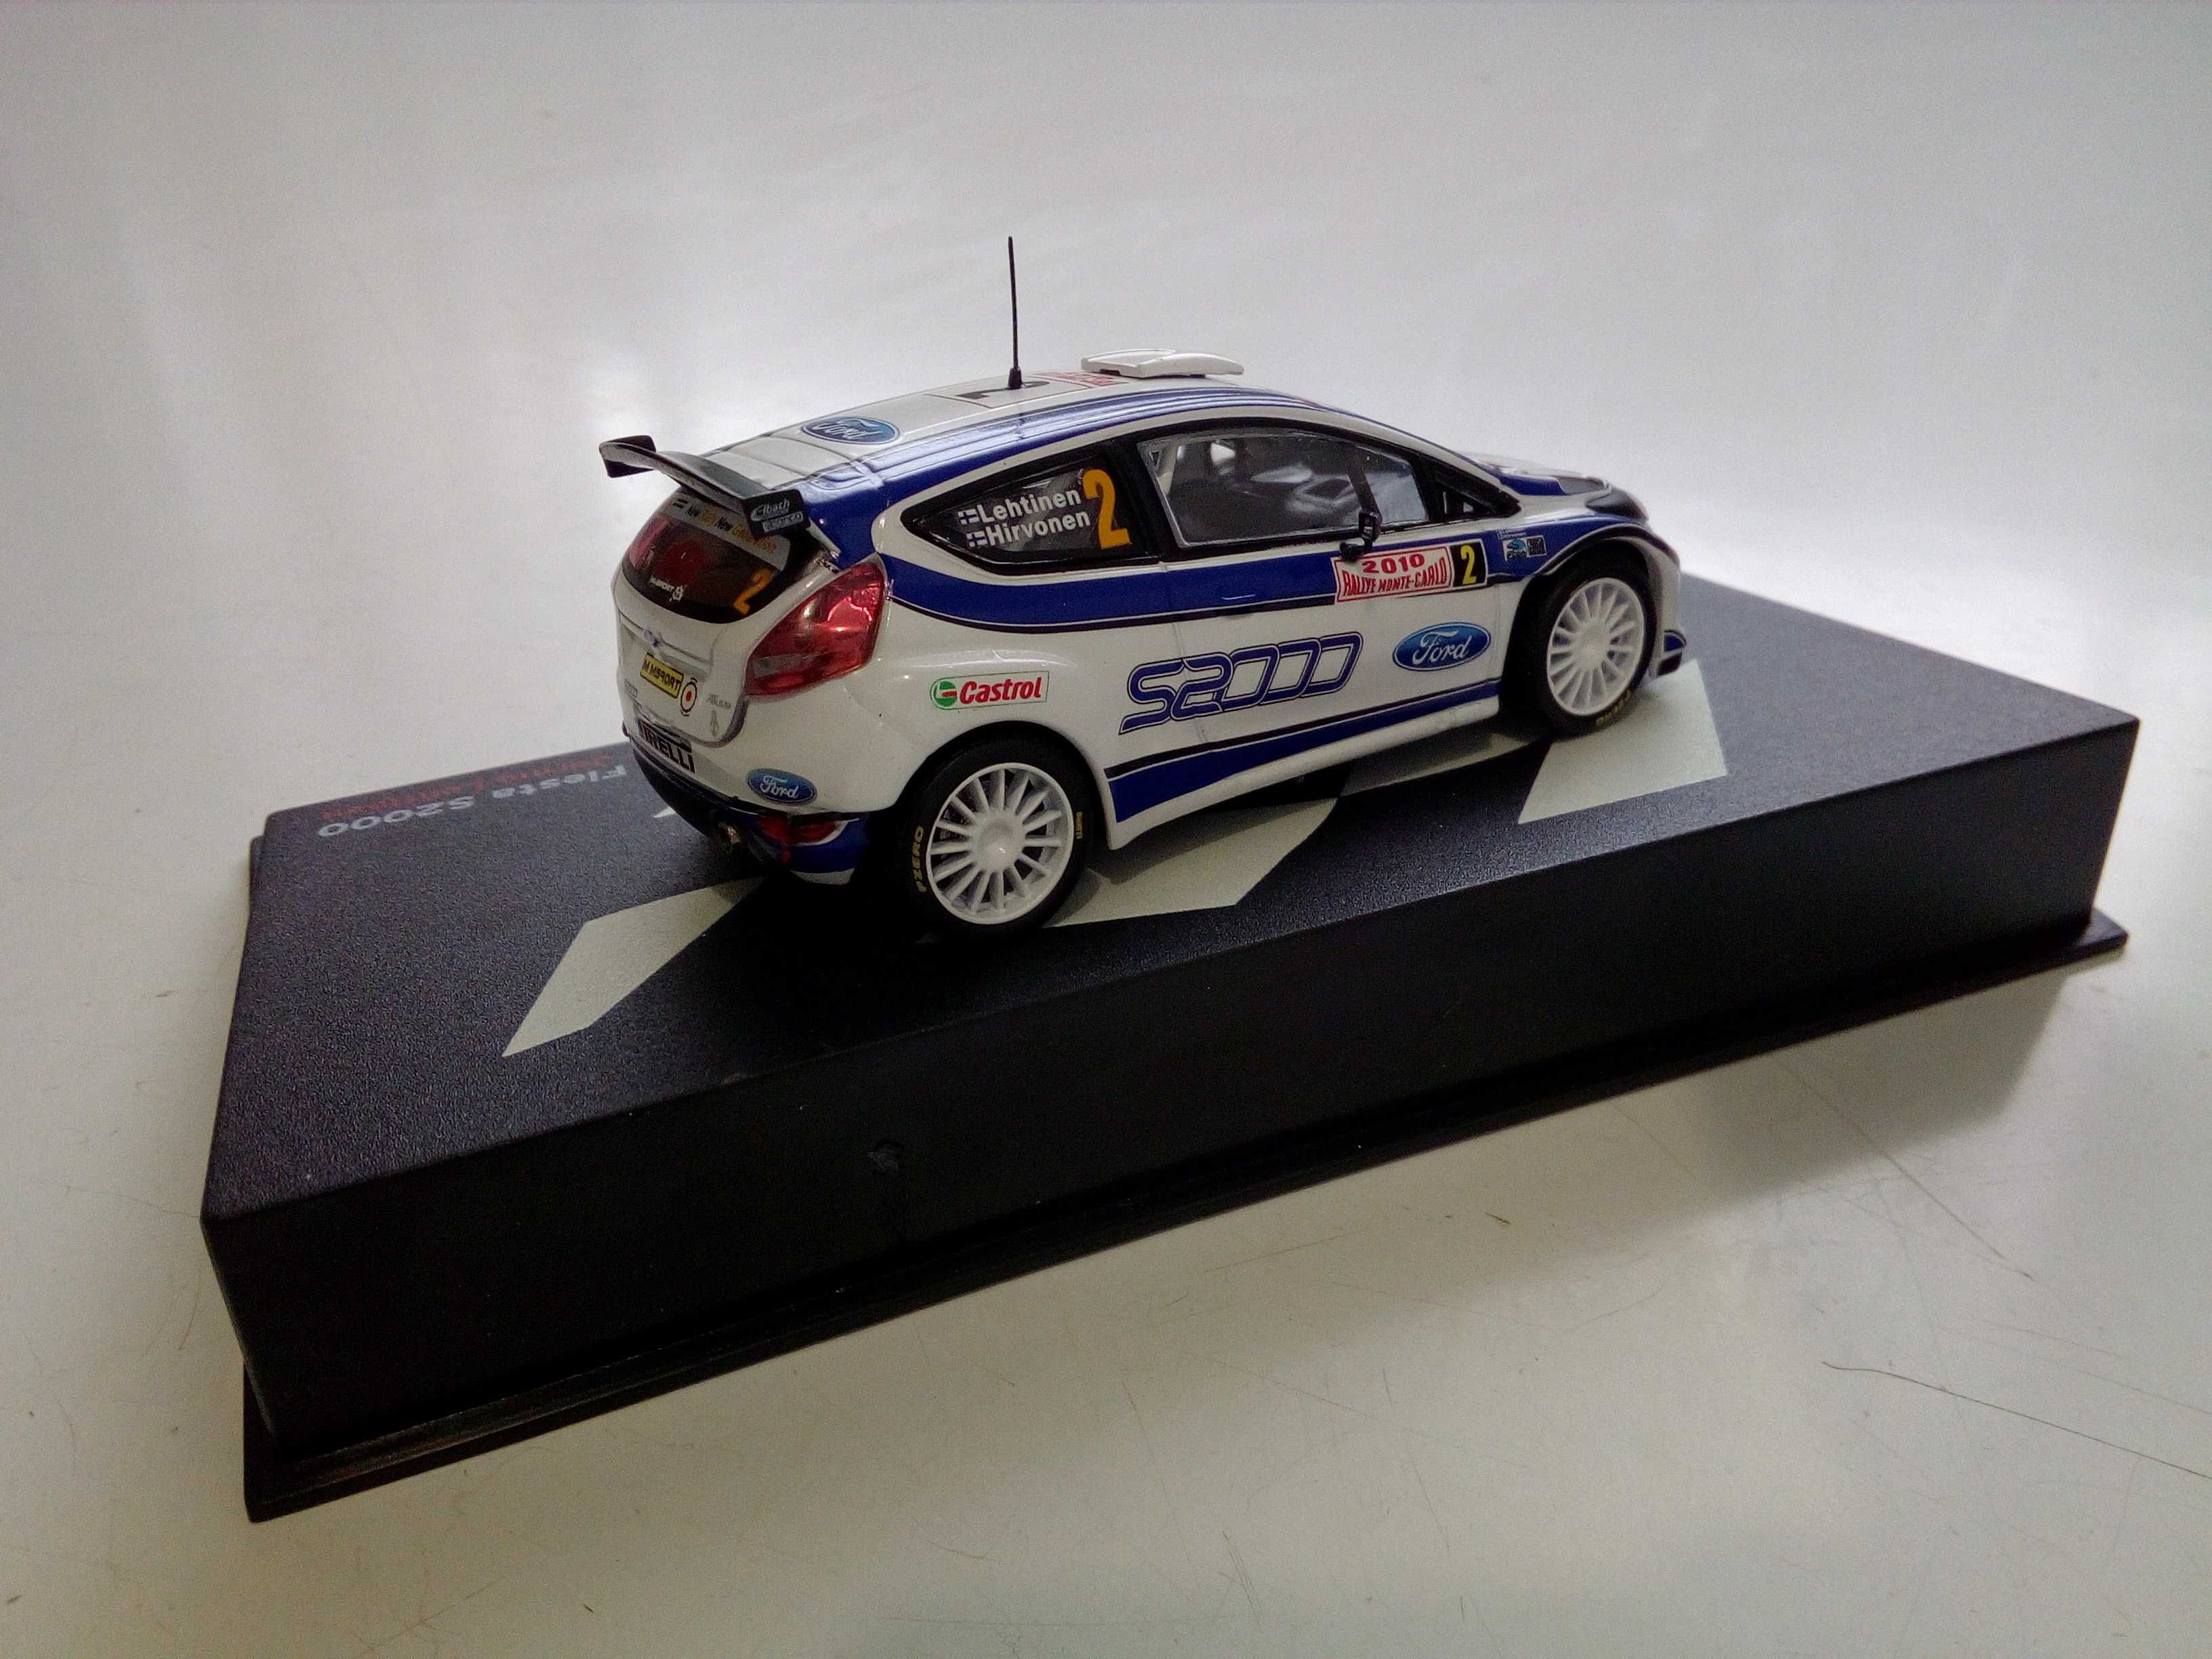 Miniaturas de carros de Rally